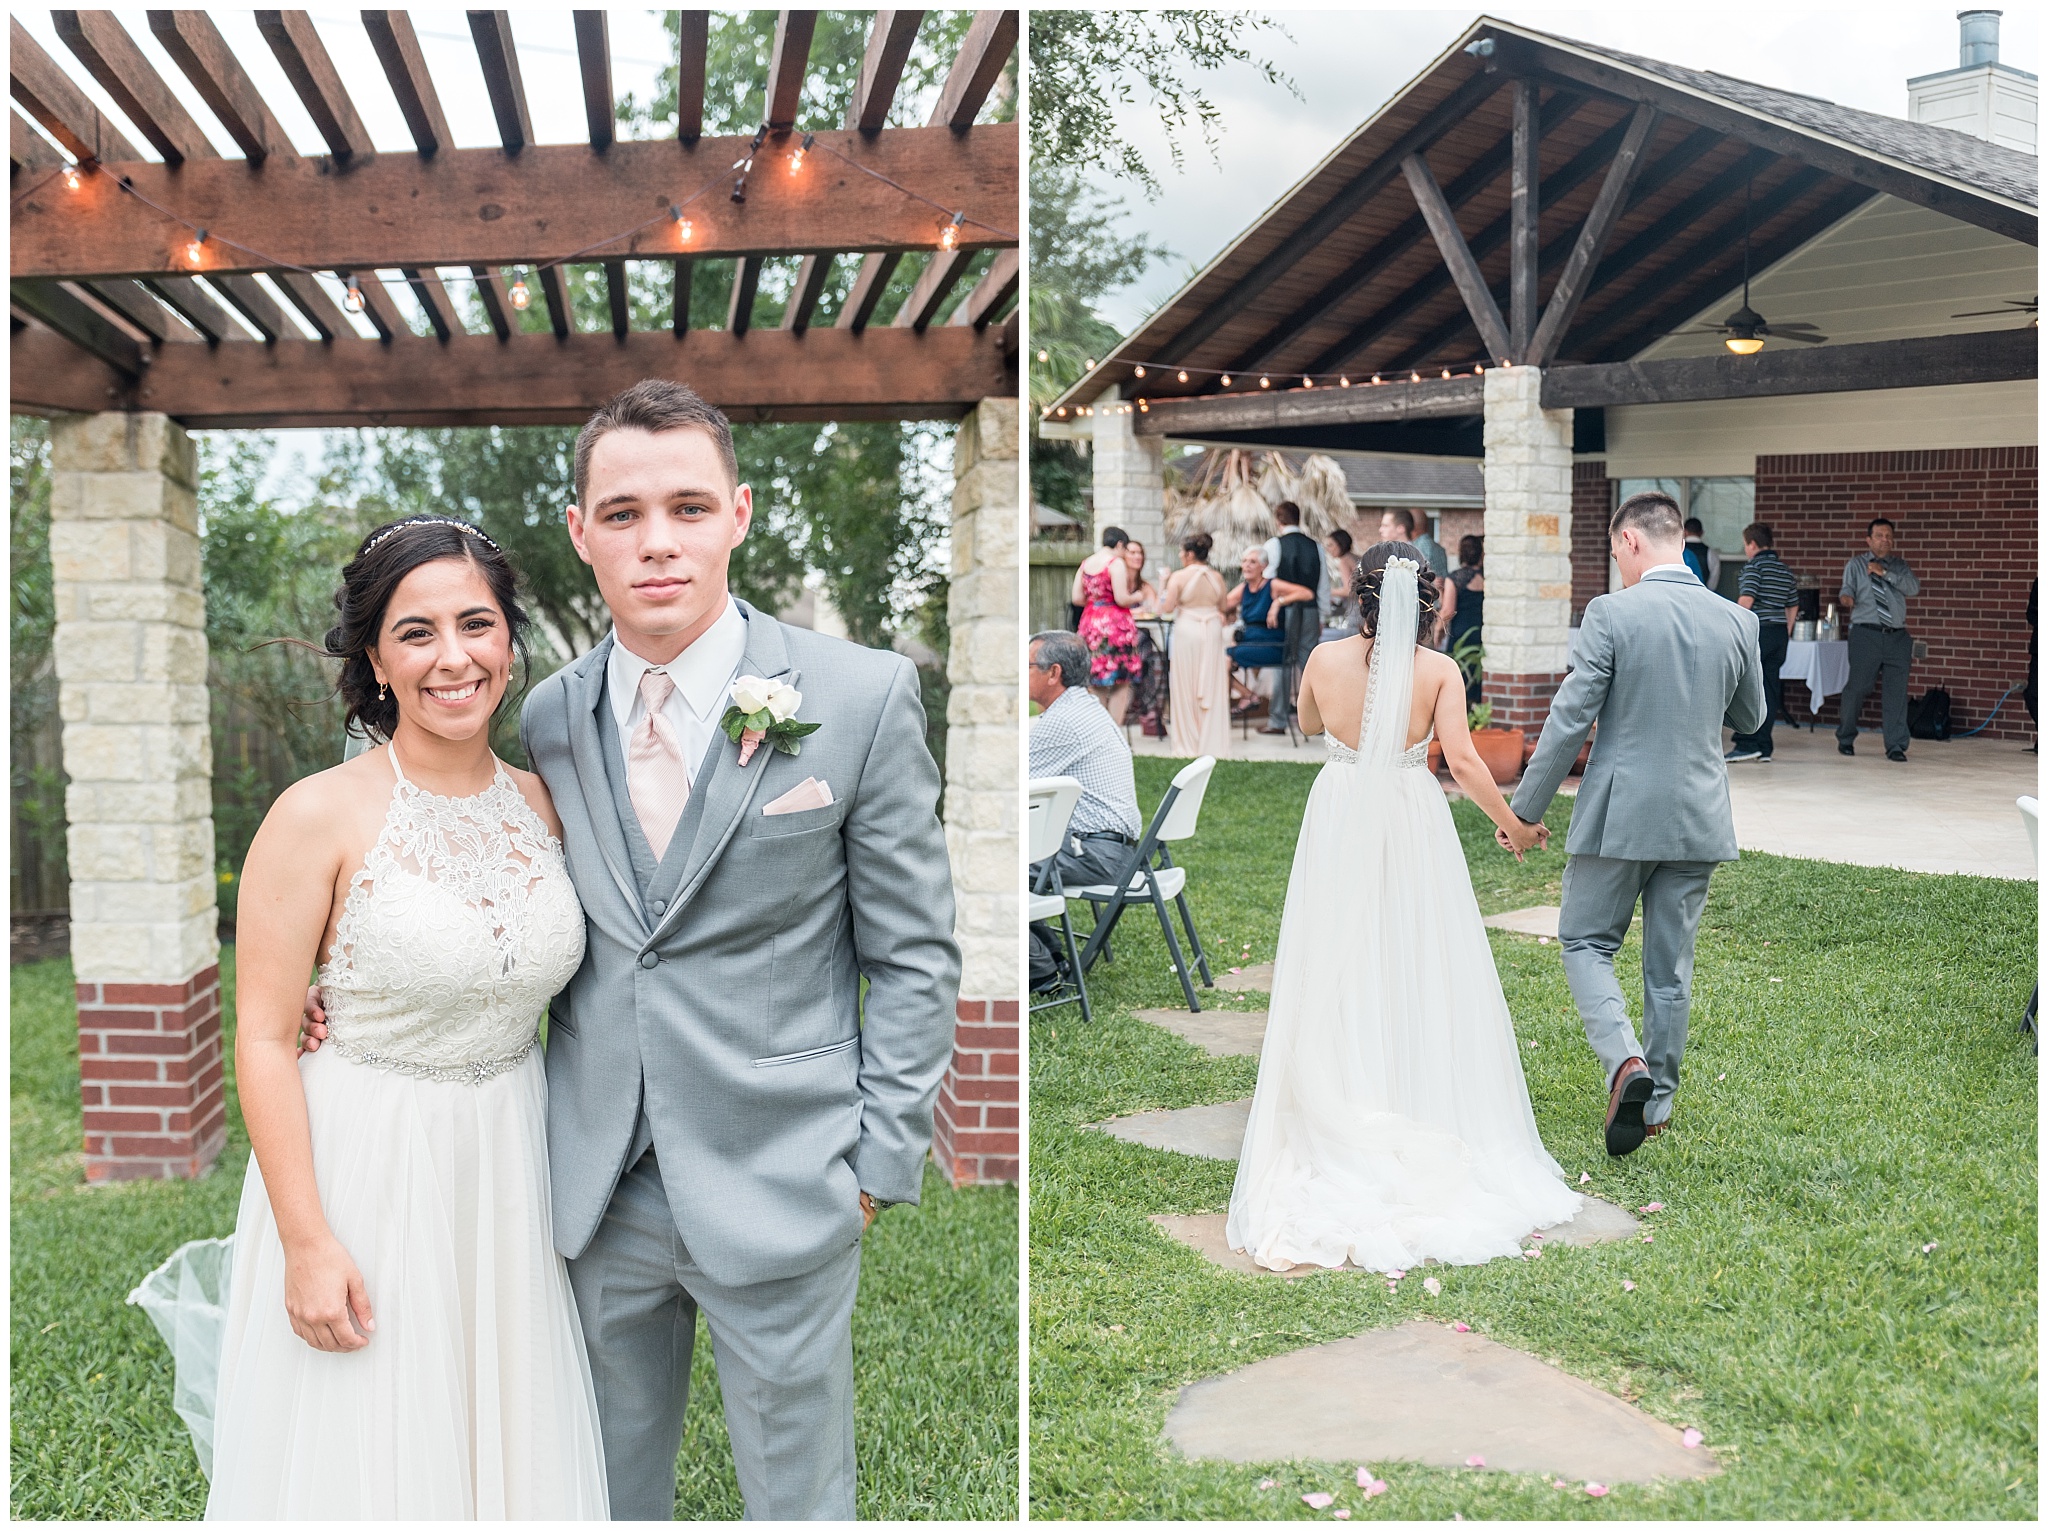 Joyful and Intimate Backyard Wedding Cypress Texas-2017-06-14_0002